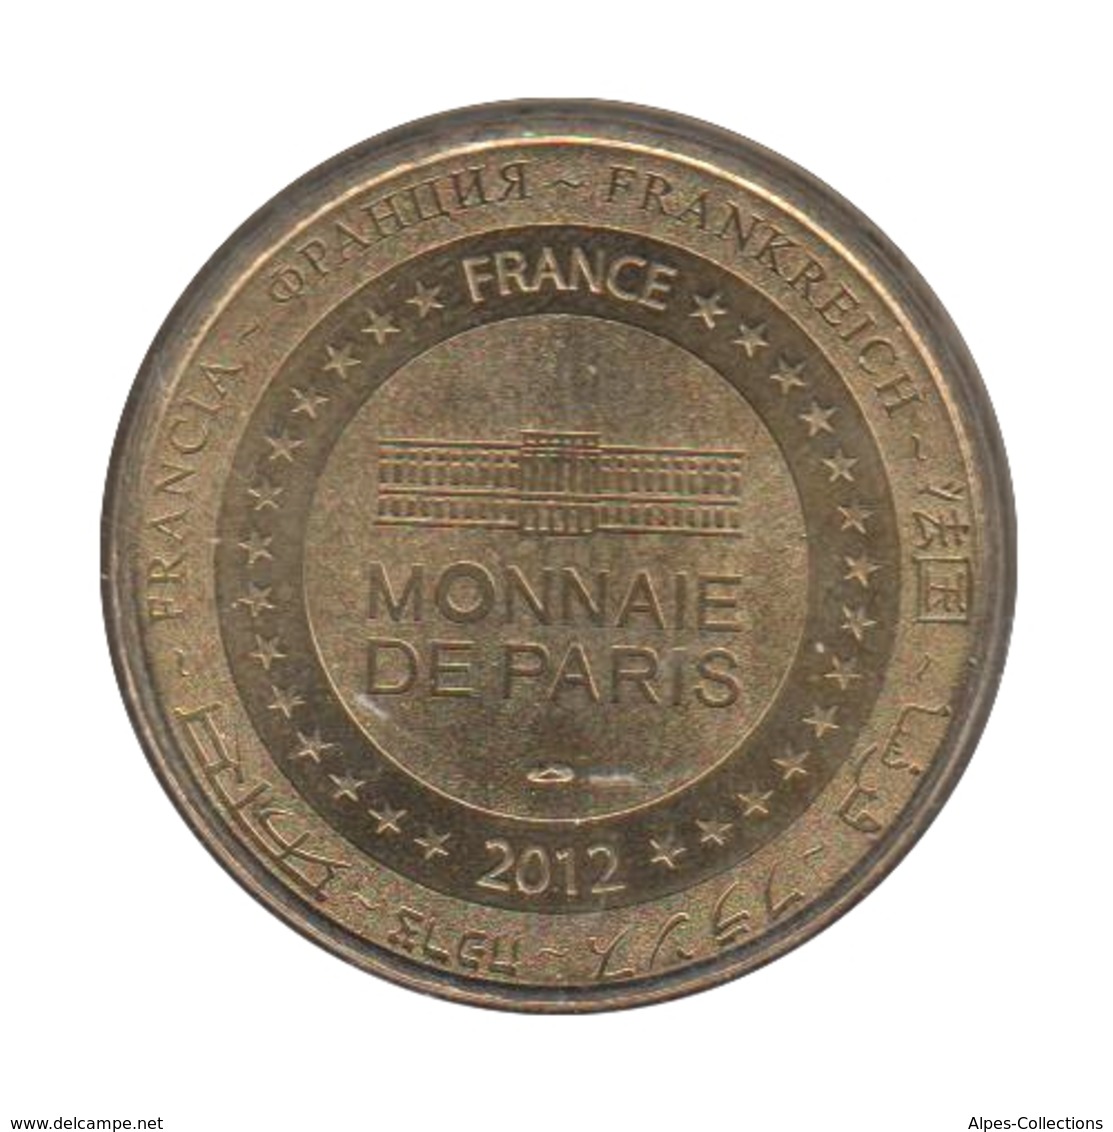 0154 - MEDAILLE TOURISTIQUE MONNAIE DE PARIS 44 - Les Machines De L'Ile - 2012 - 2012